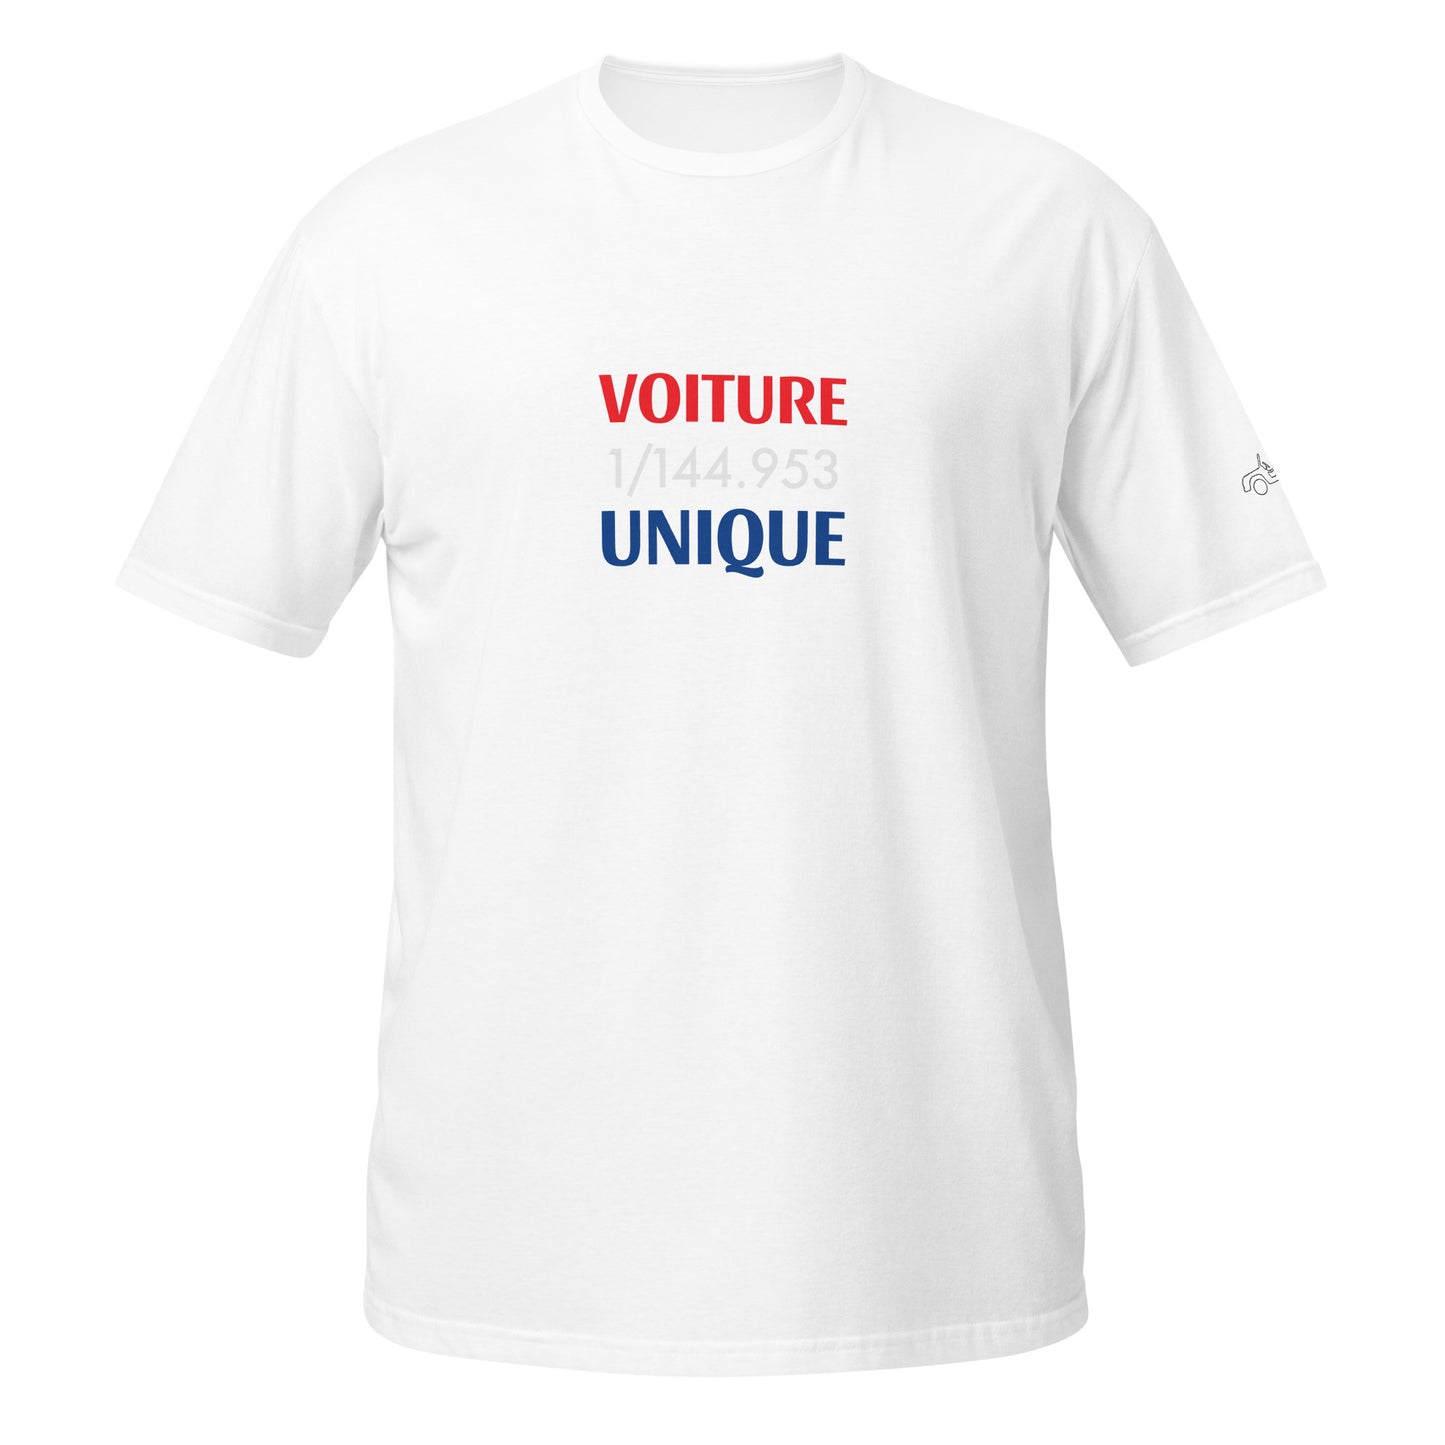 1/144.953 Voiture Unique Citroën Méhari T-shirt uniseks - Zwart, Navy of Wit